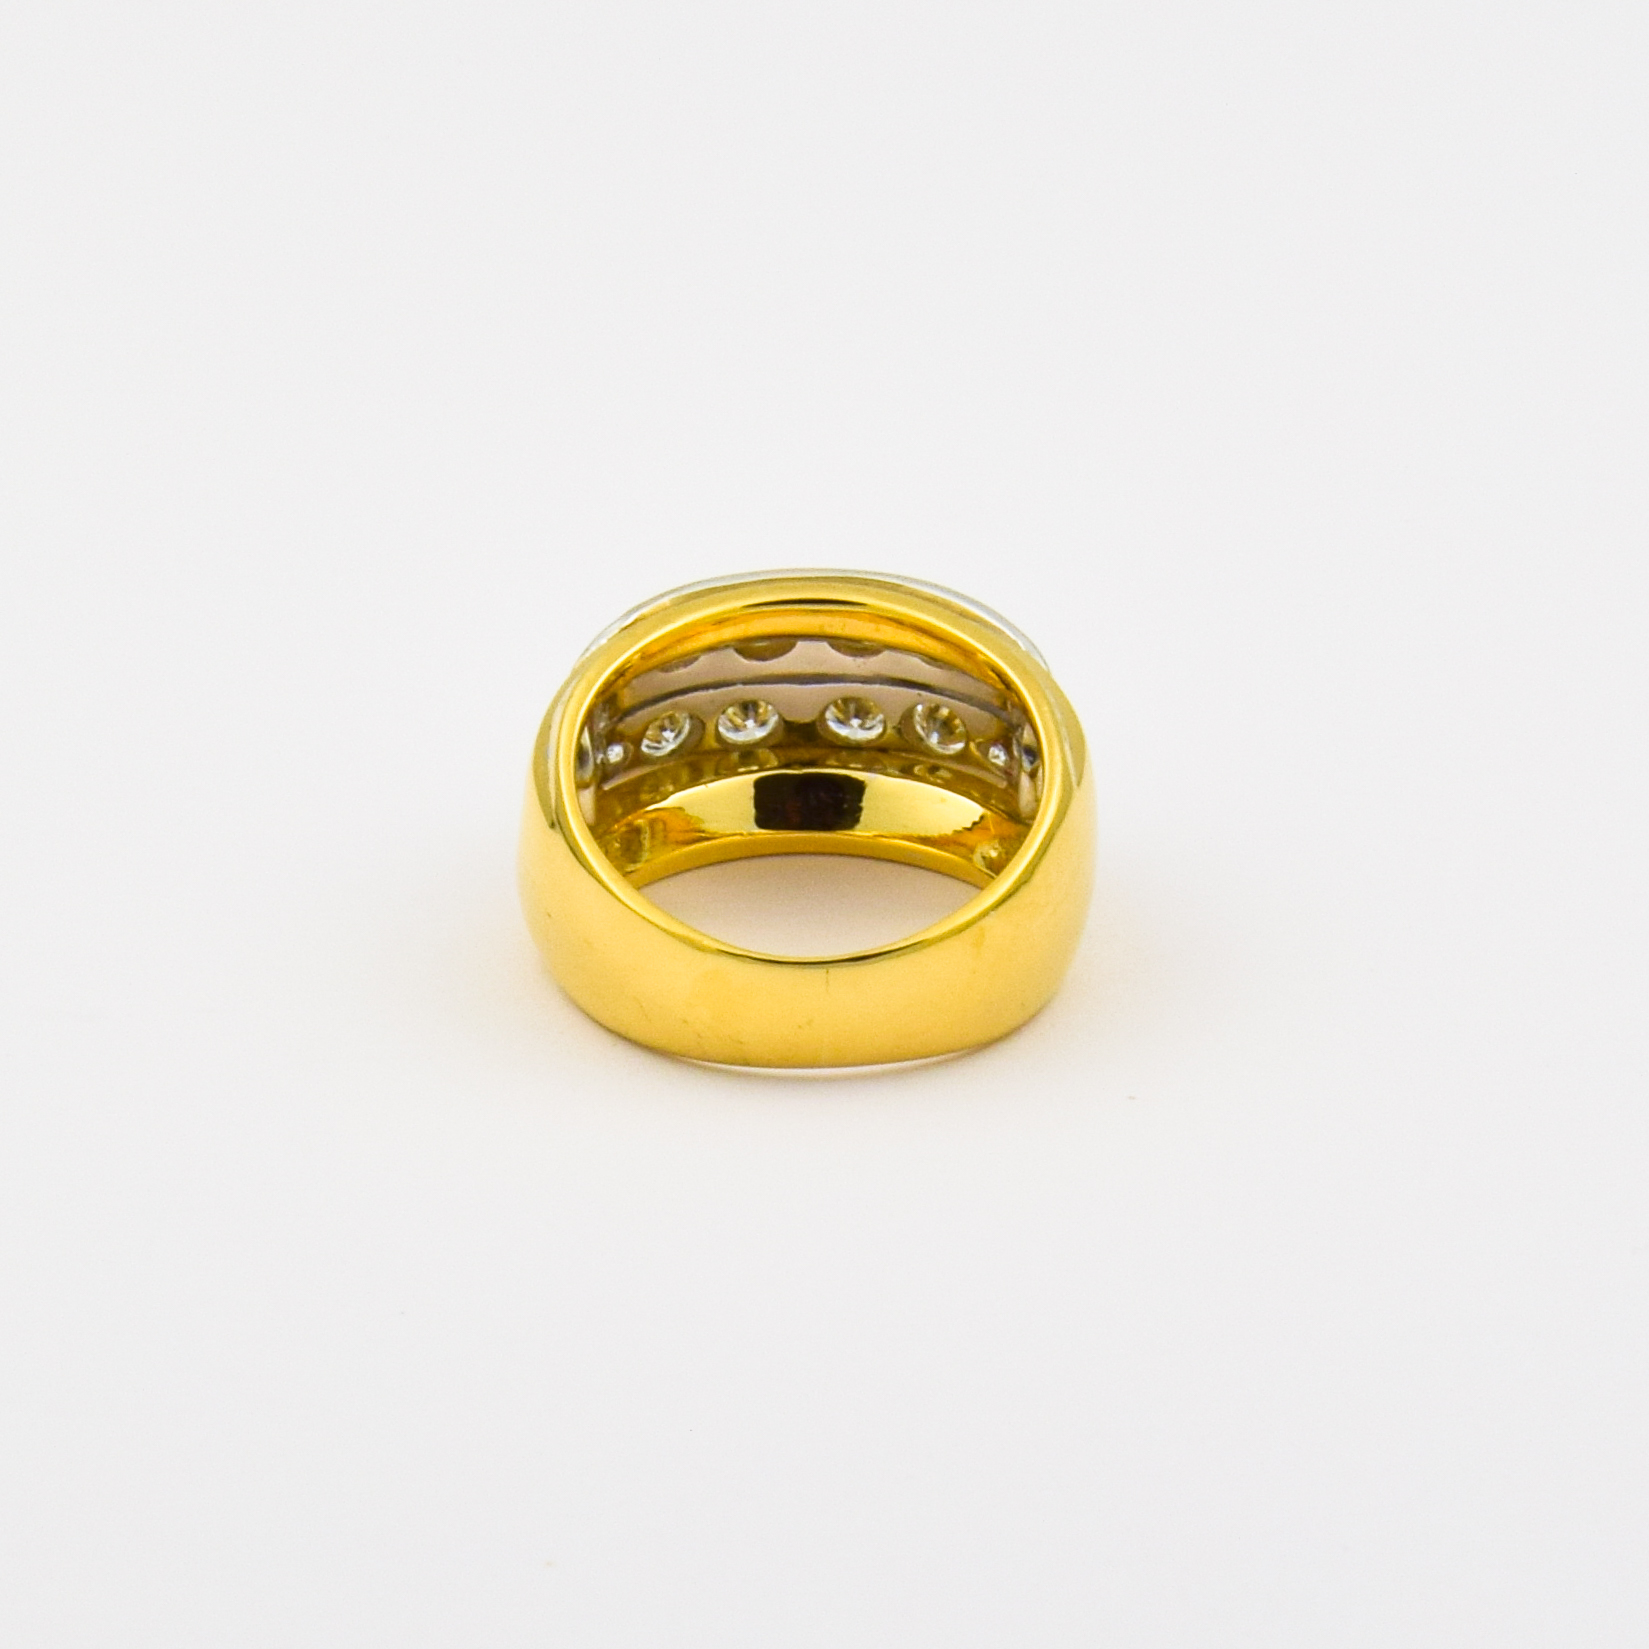 Brillantring aus 750 Gelb- und Weißgold, nachhaltiger second hand Schmuck perfekt aufgearbeitet